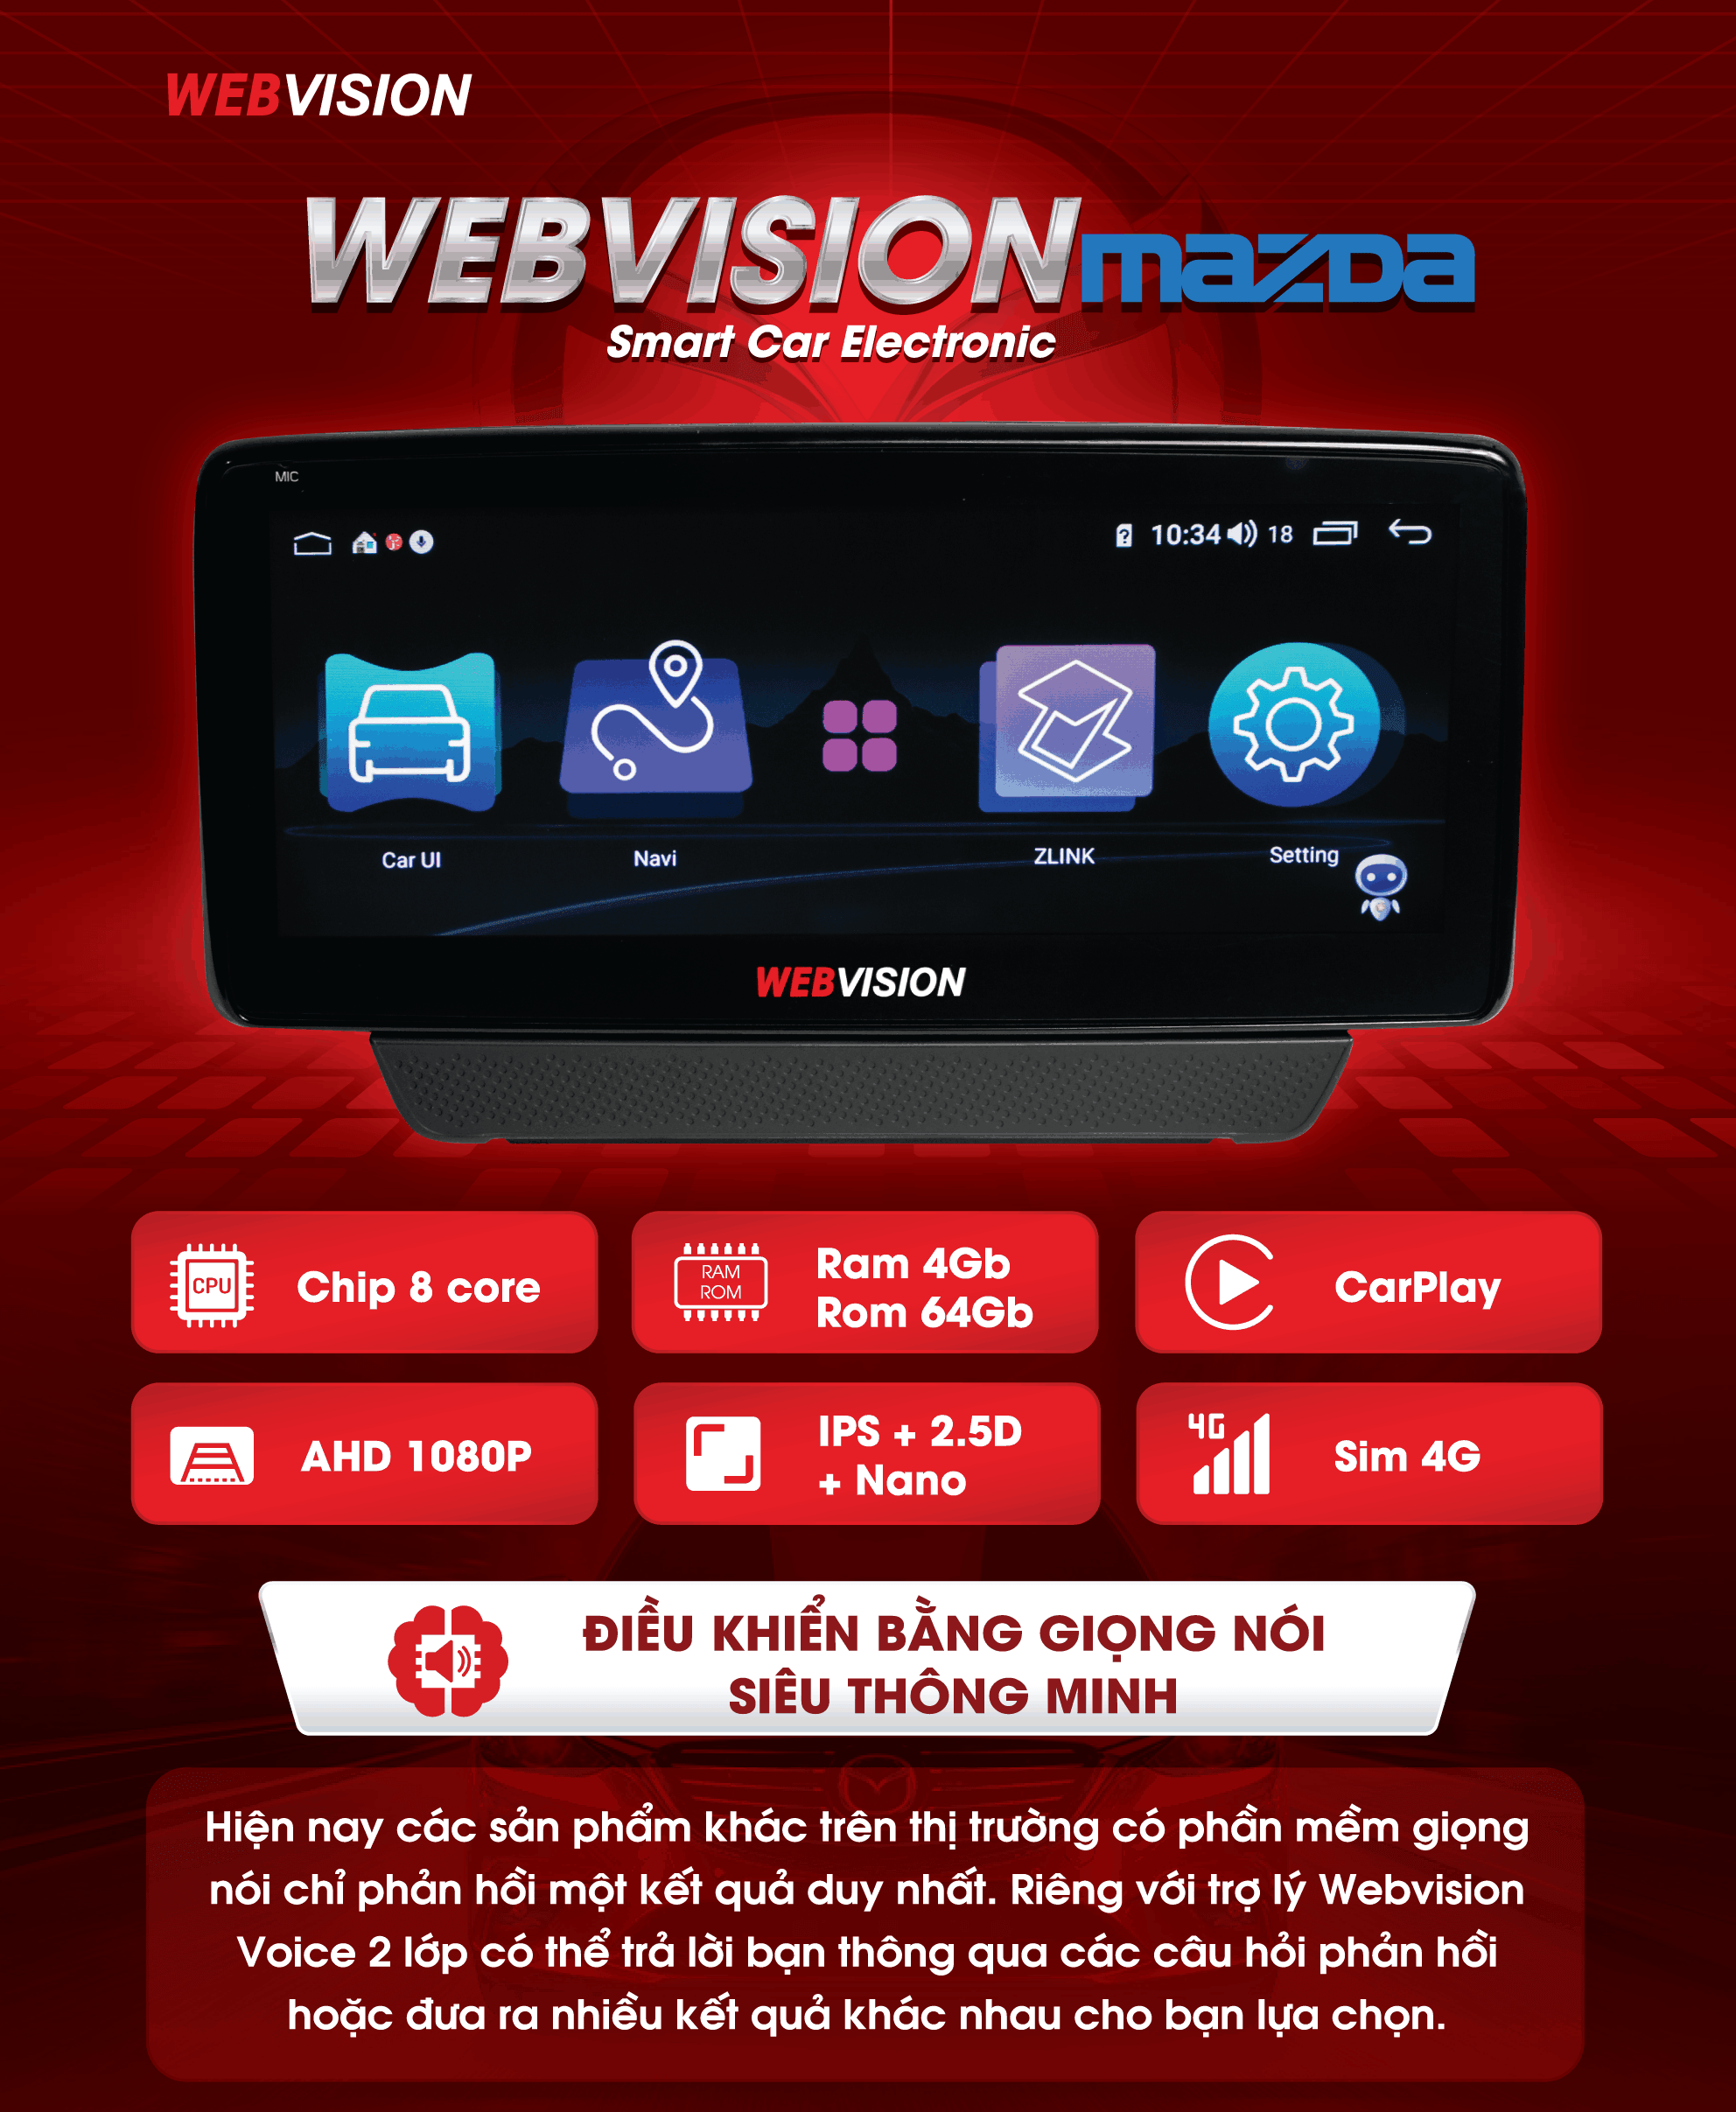 lắp đặt màn hình dvd webvision Mazda chính hãng tại Thành Nam GPS